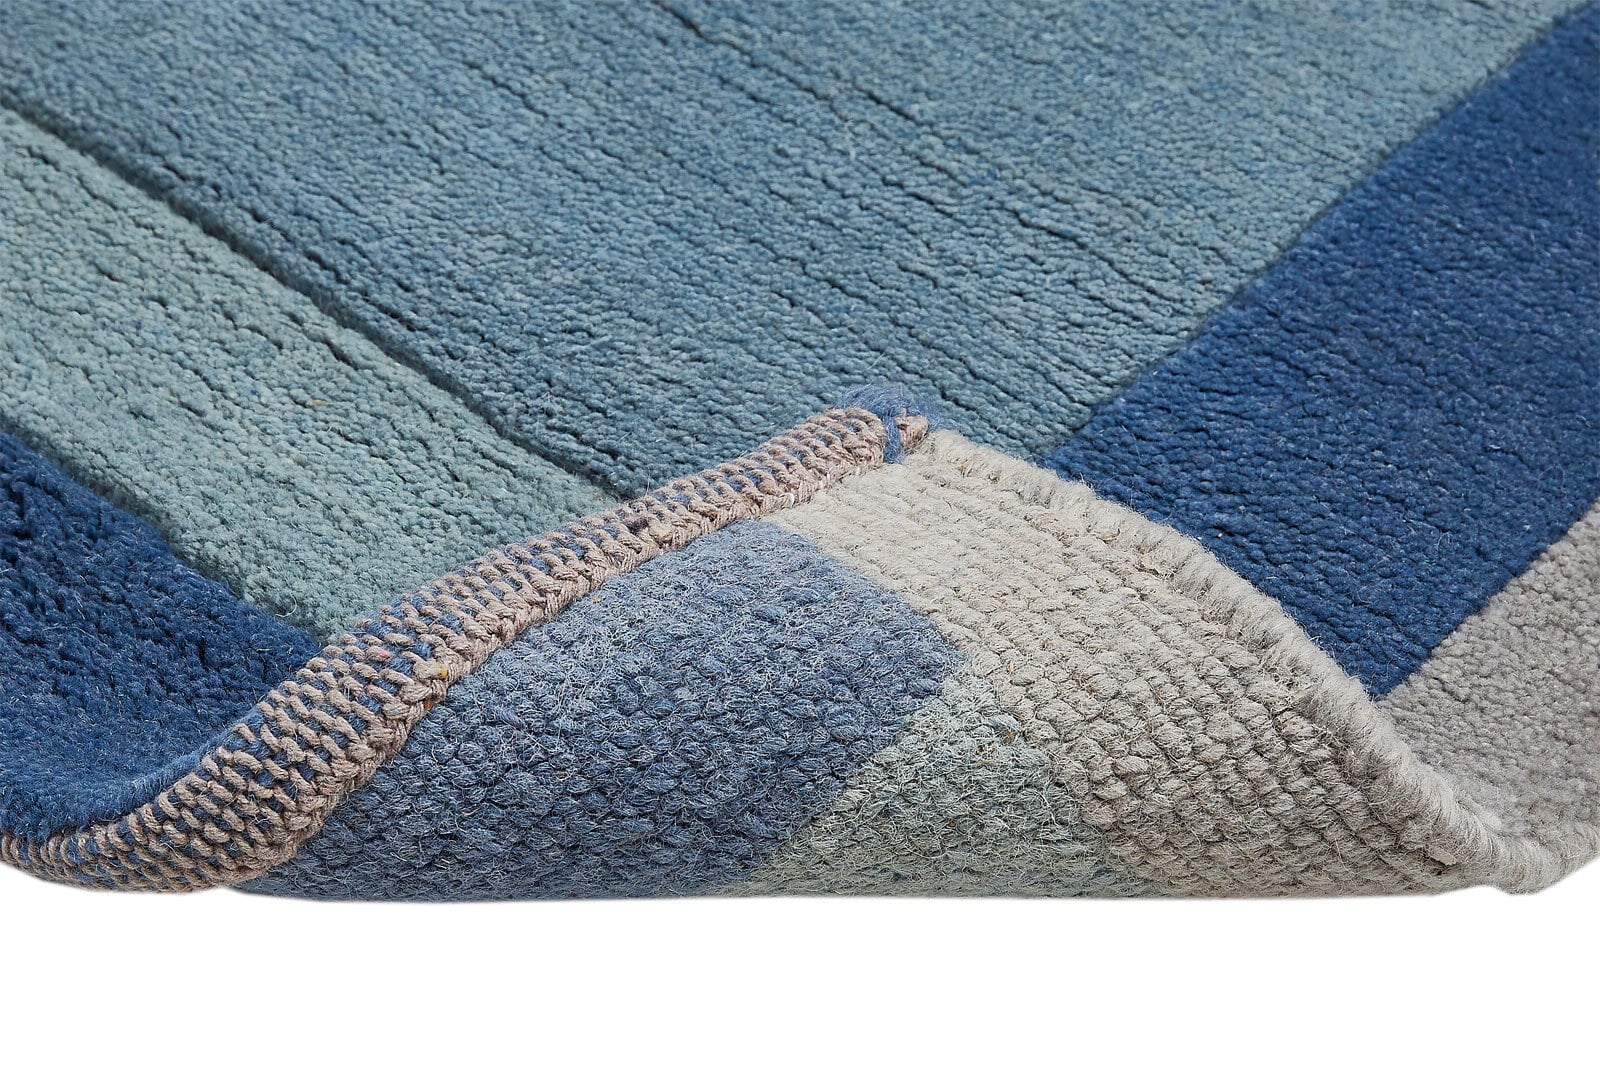 Teppich MANALI 60 x 90 cm blau